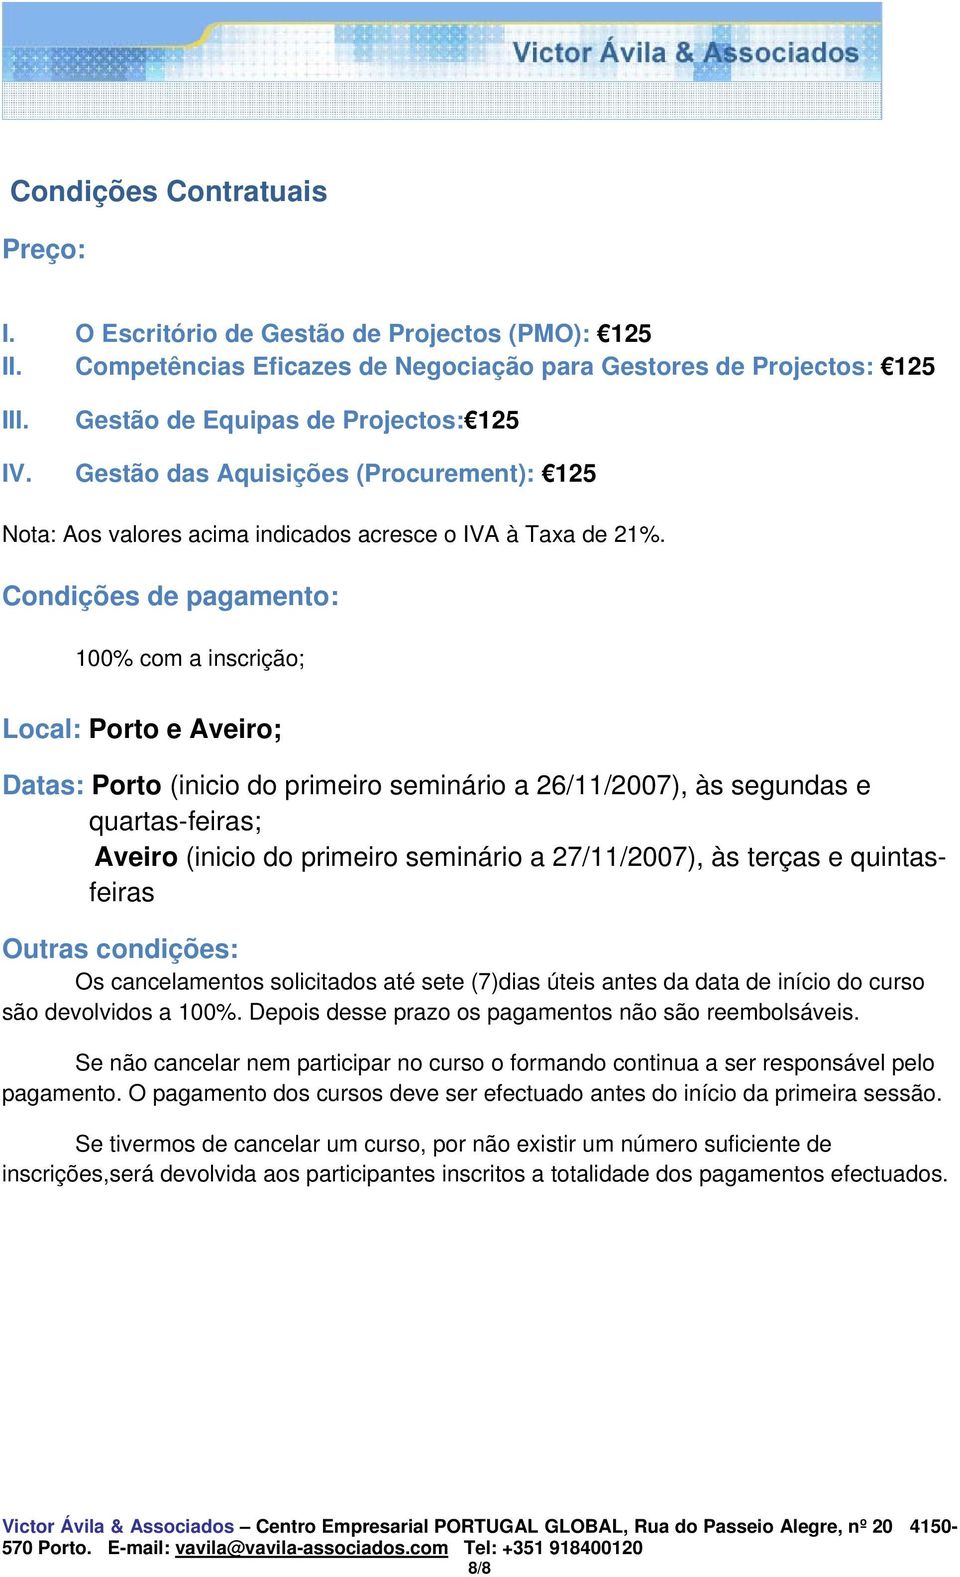 Condições de pagamento: 100% com a inscrição; Local: Porto e Aveiro; Datas: Porto (inicio do primeiro seminário a 26/11/2007), às segundas e quartas-feiras; Aveiro (inicio do primeiro seminário a